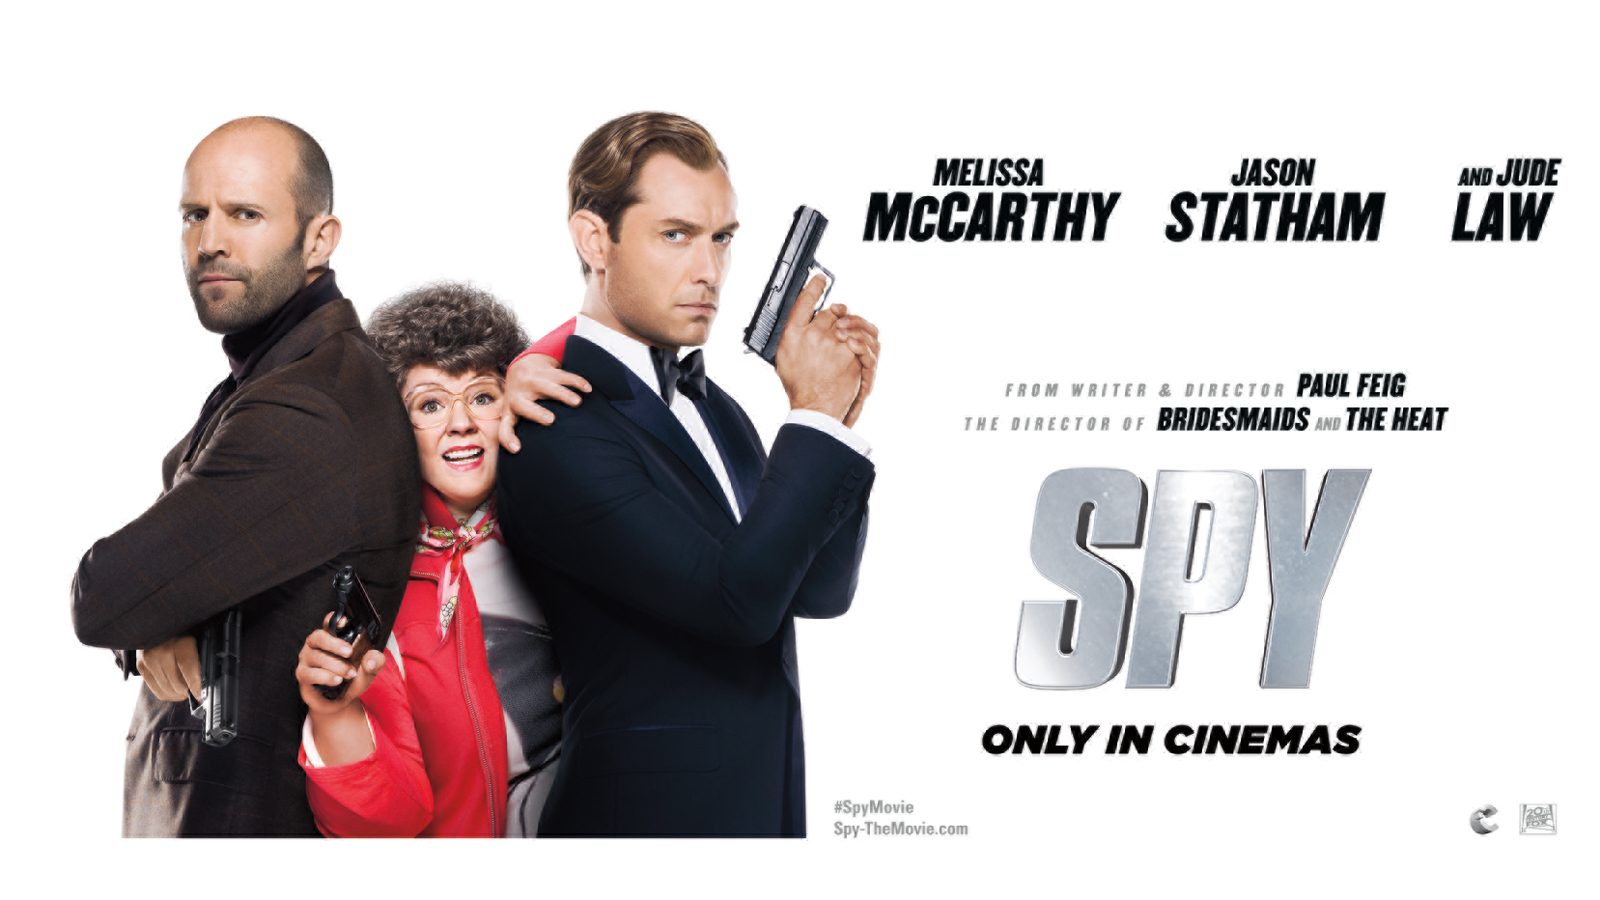 is the movie spy waz filmed in bufapest?